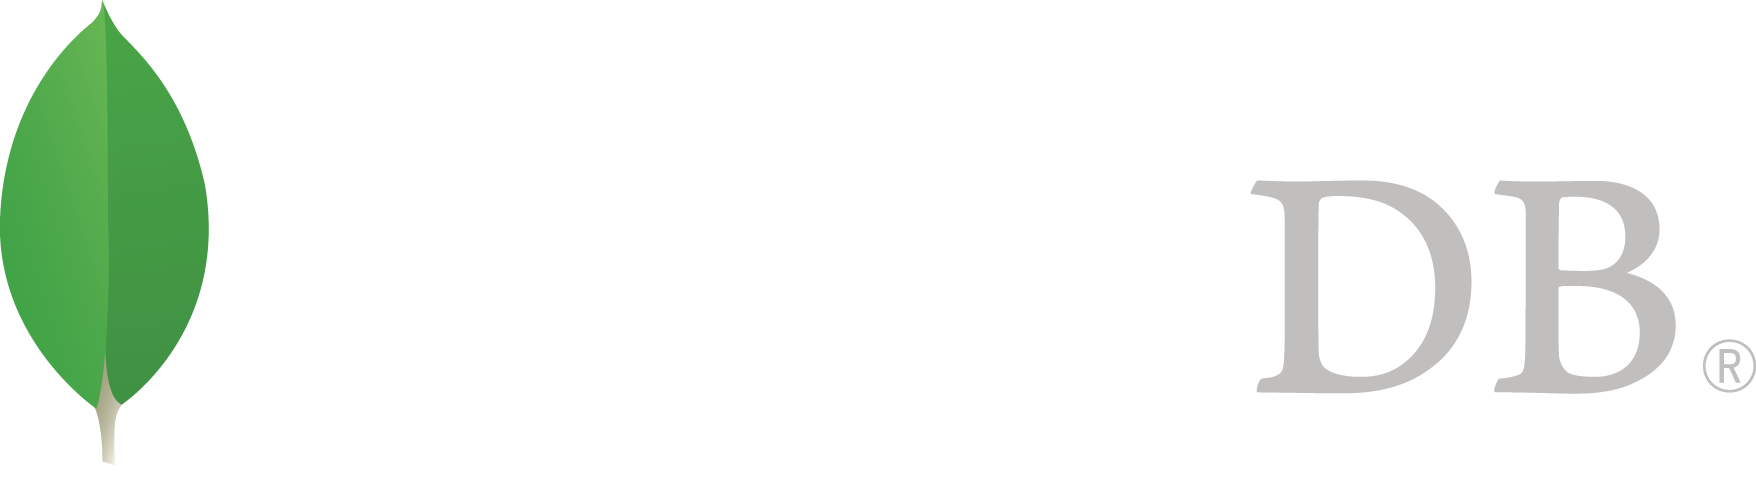 Mongo DB shaped sticker